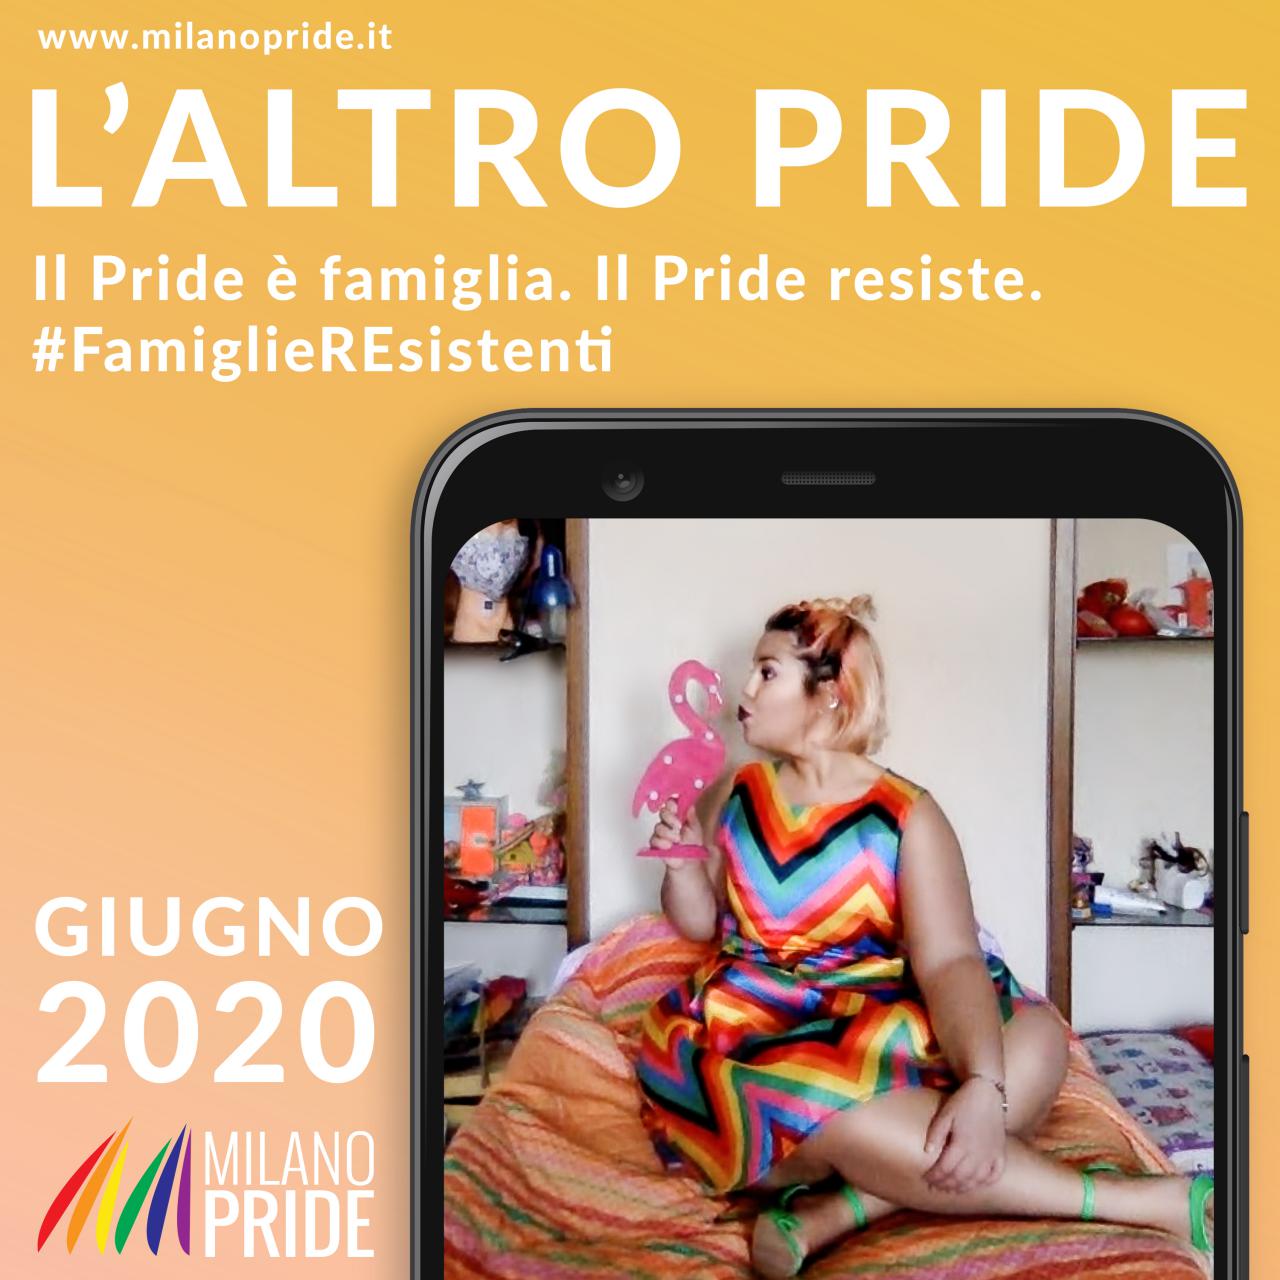 Ph. Ylenia Bonacina - campagna Milano Pride 2020 Istituto Italiano di Fotografia